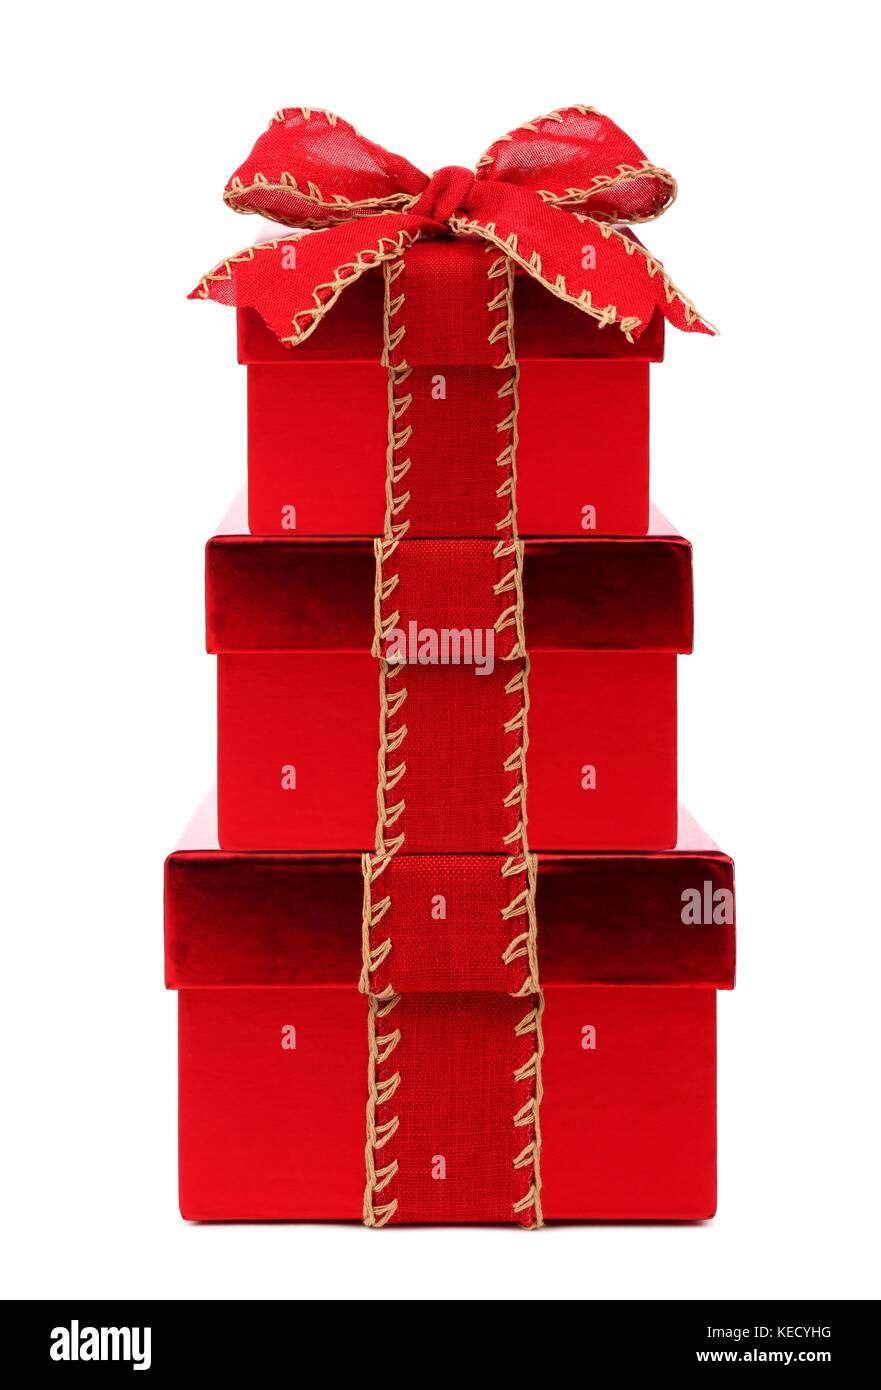 Cadeaux de Noël rouge empilés enveloppé de ruban arc rouge et rustique, isolated on white Banque D'Images